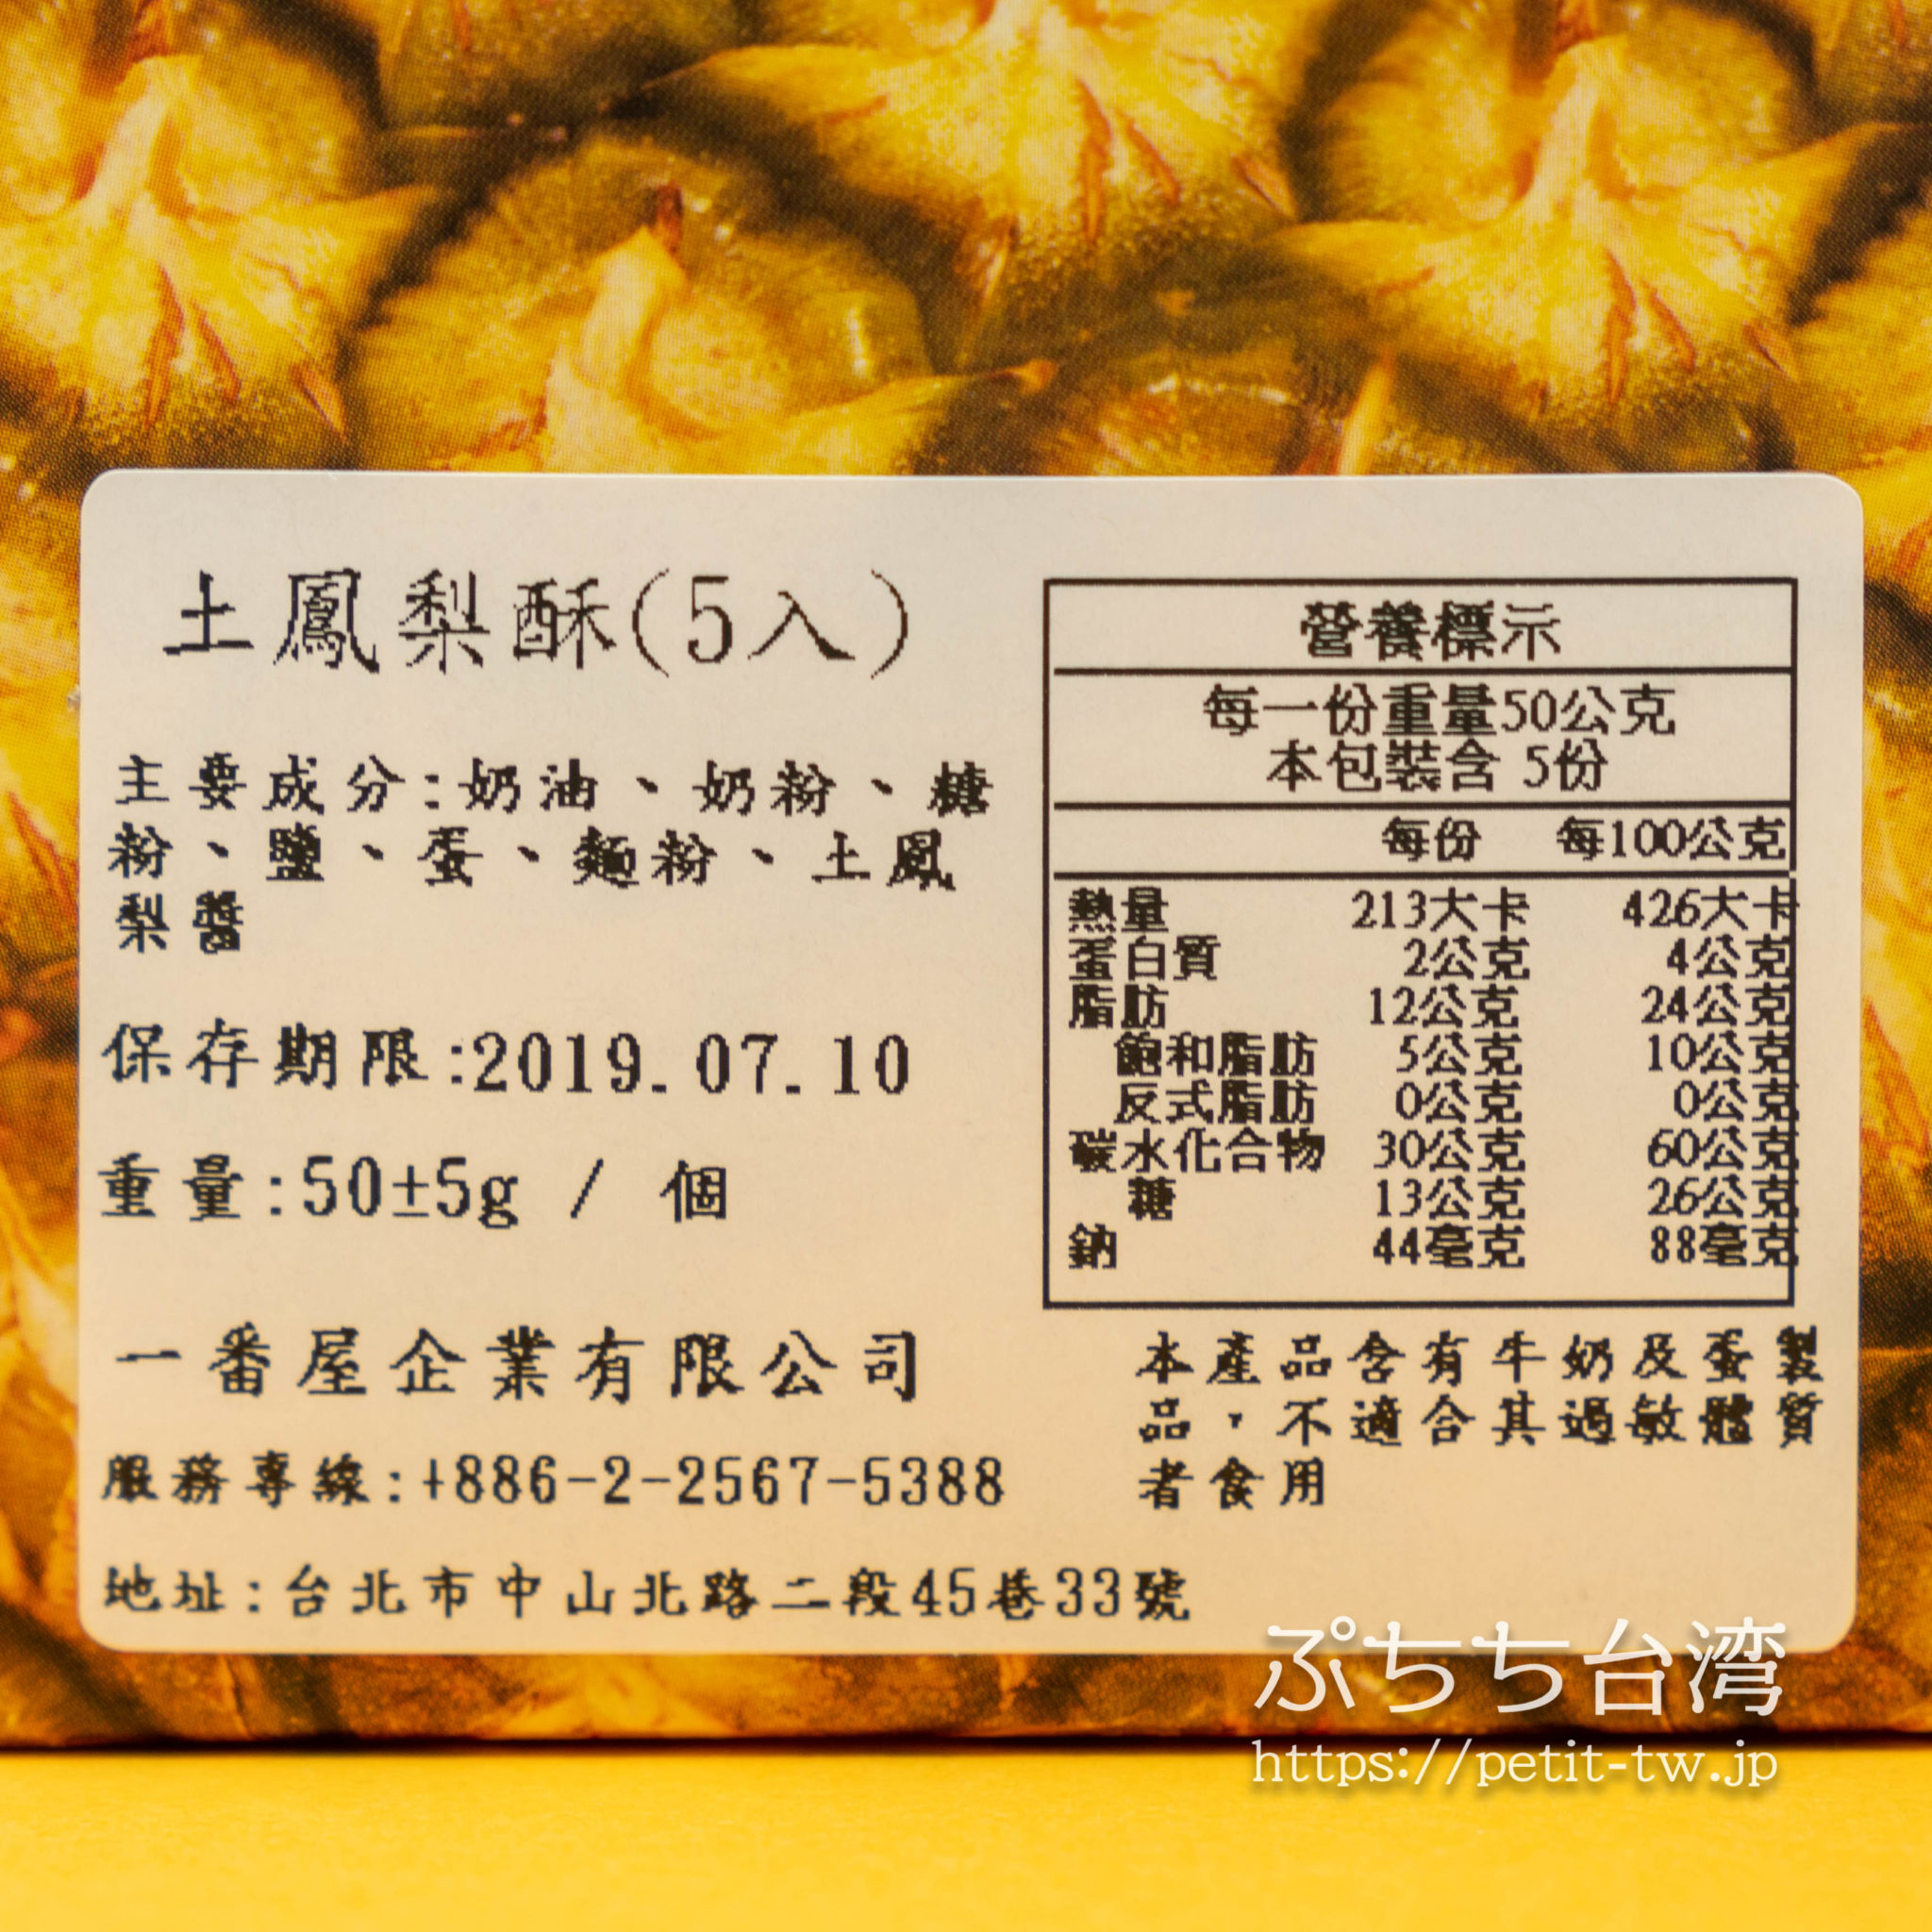 一番屋 お茶屋さんのパイナップルケーキ 無添加の手作りパイナップルケーキが人気 台北 ぷちち台湾 台湾旅行